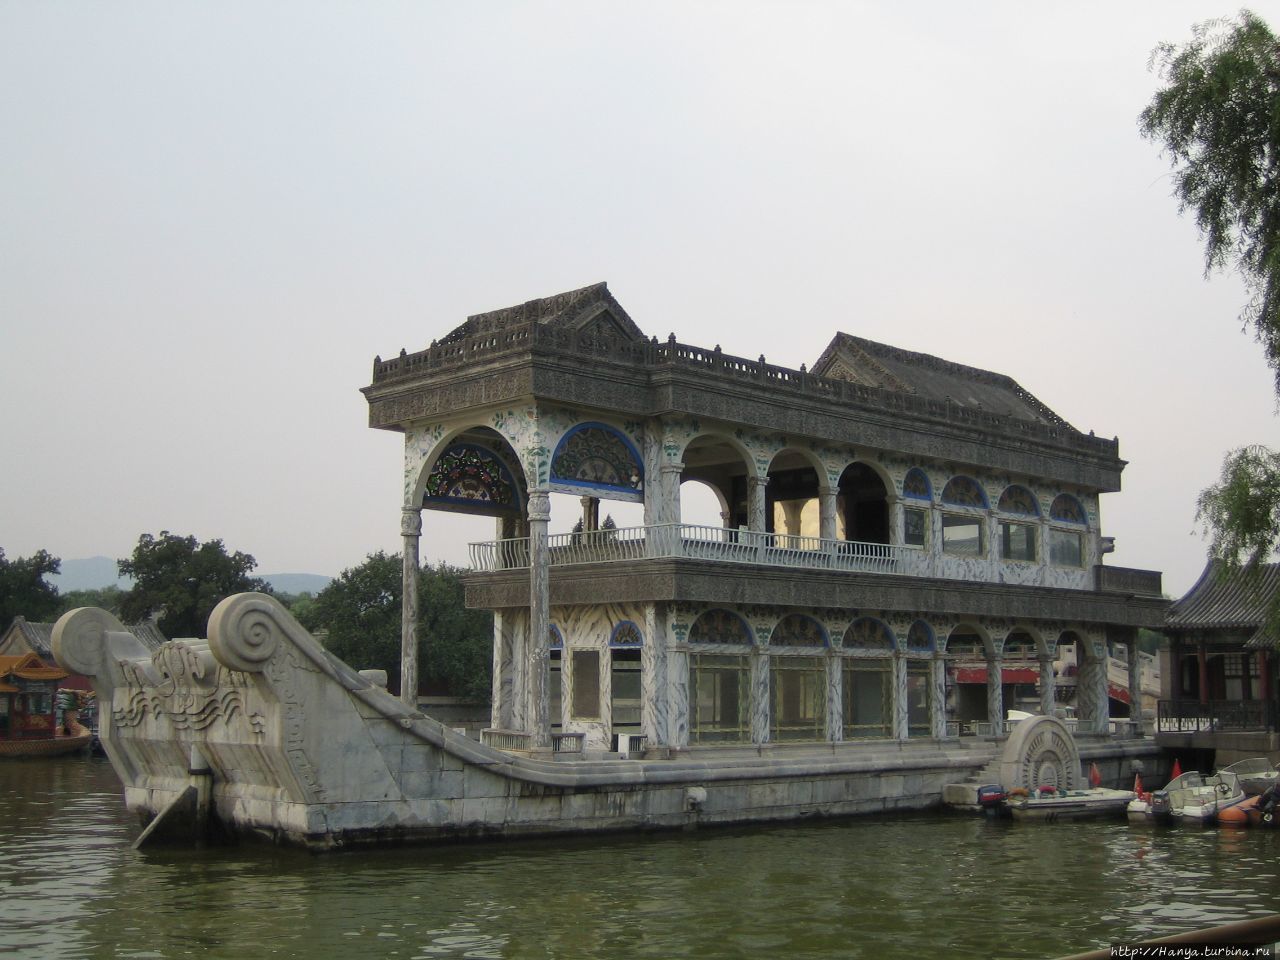 Мраморная лодка Цинъяньфан в Парке Ихэюань Пекин, Китай